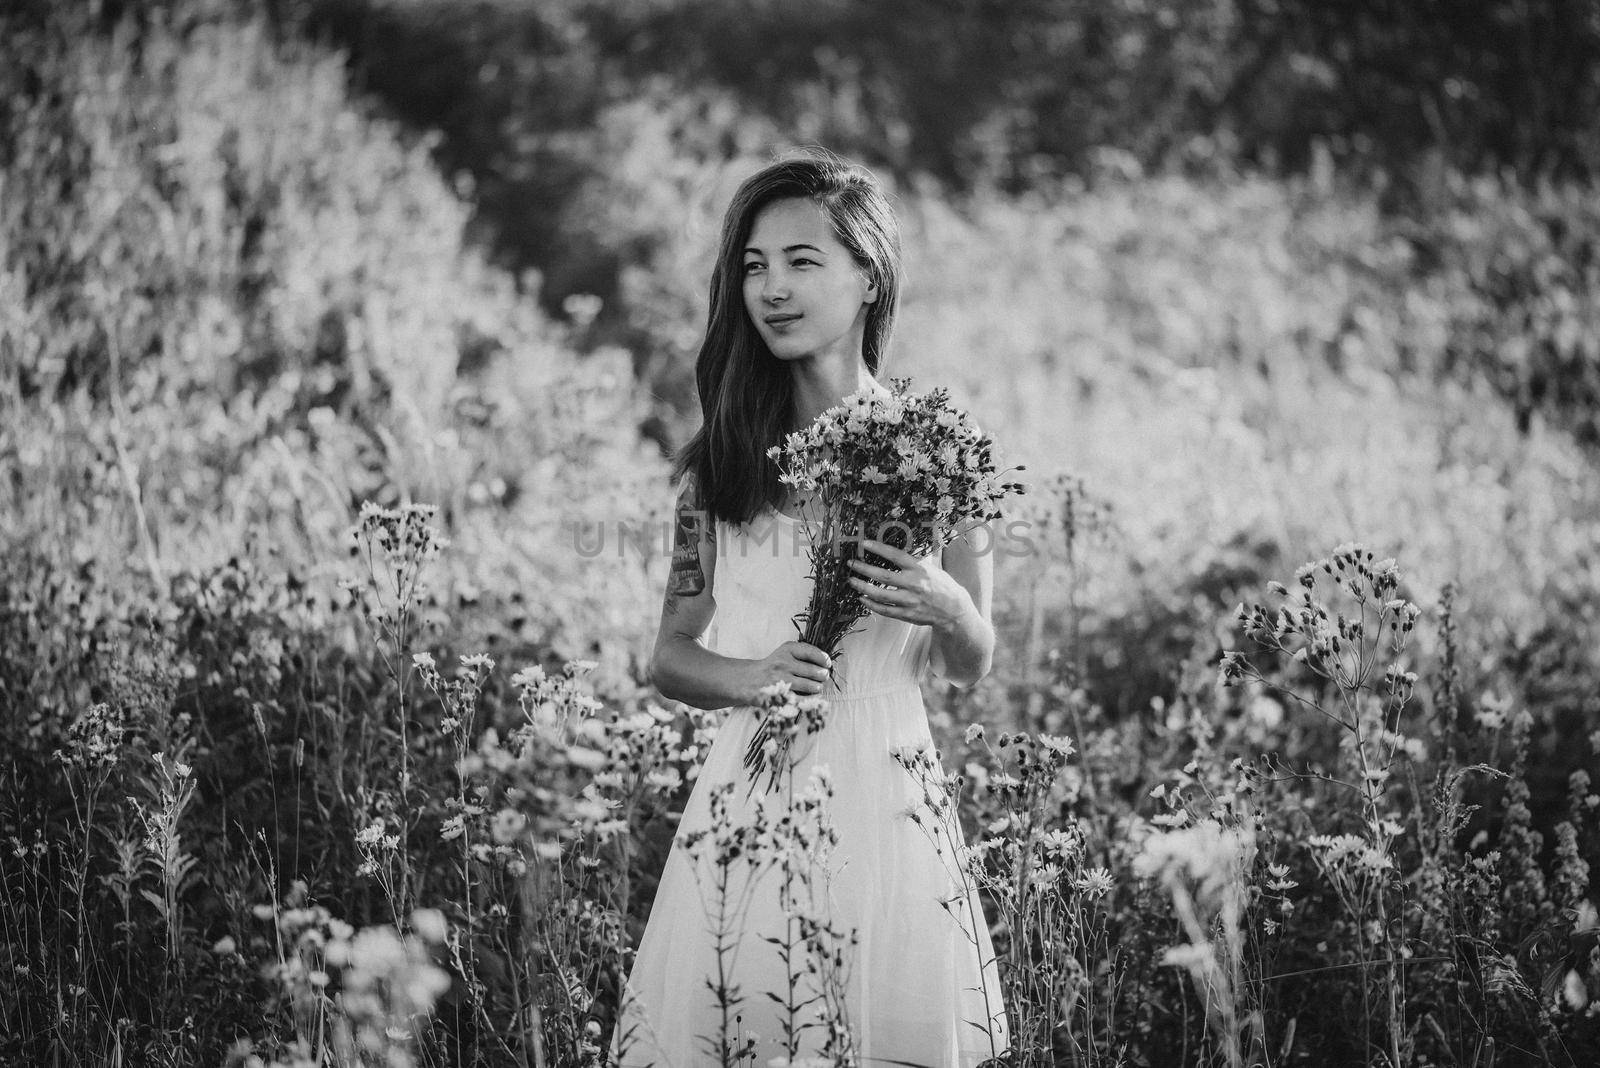 Attractive girl walking on flower field by alexAleksei